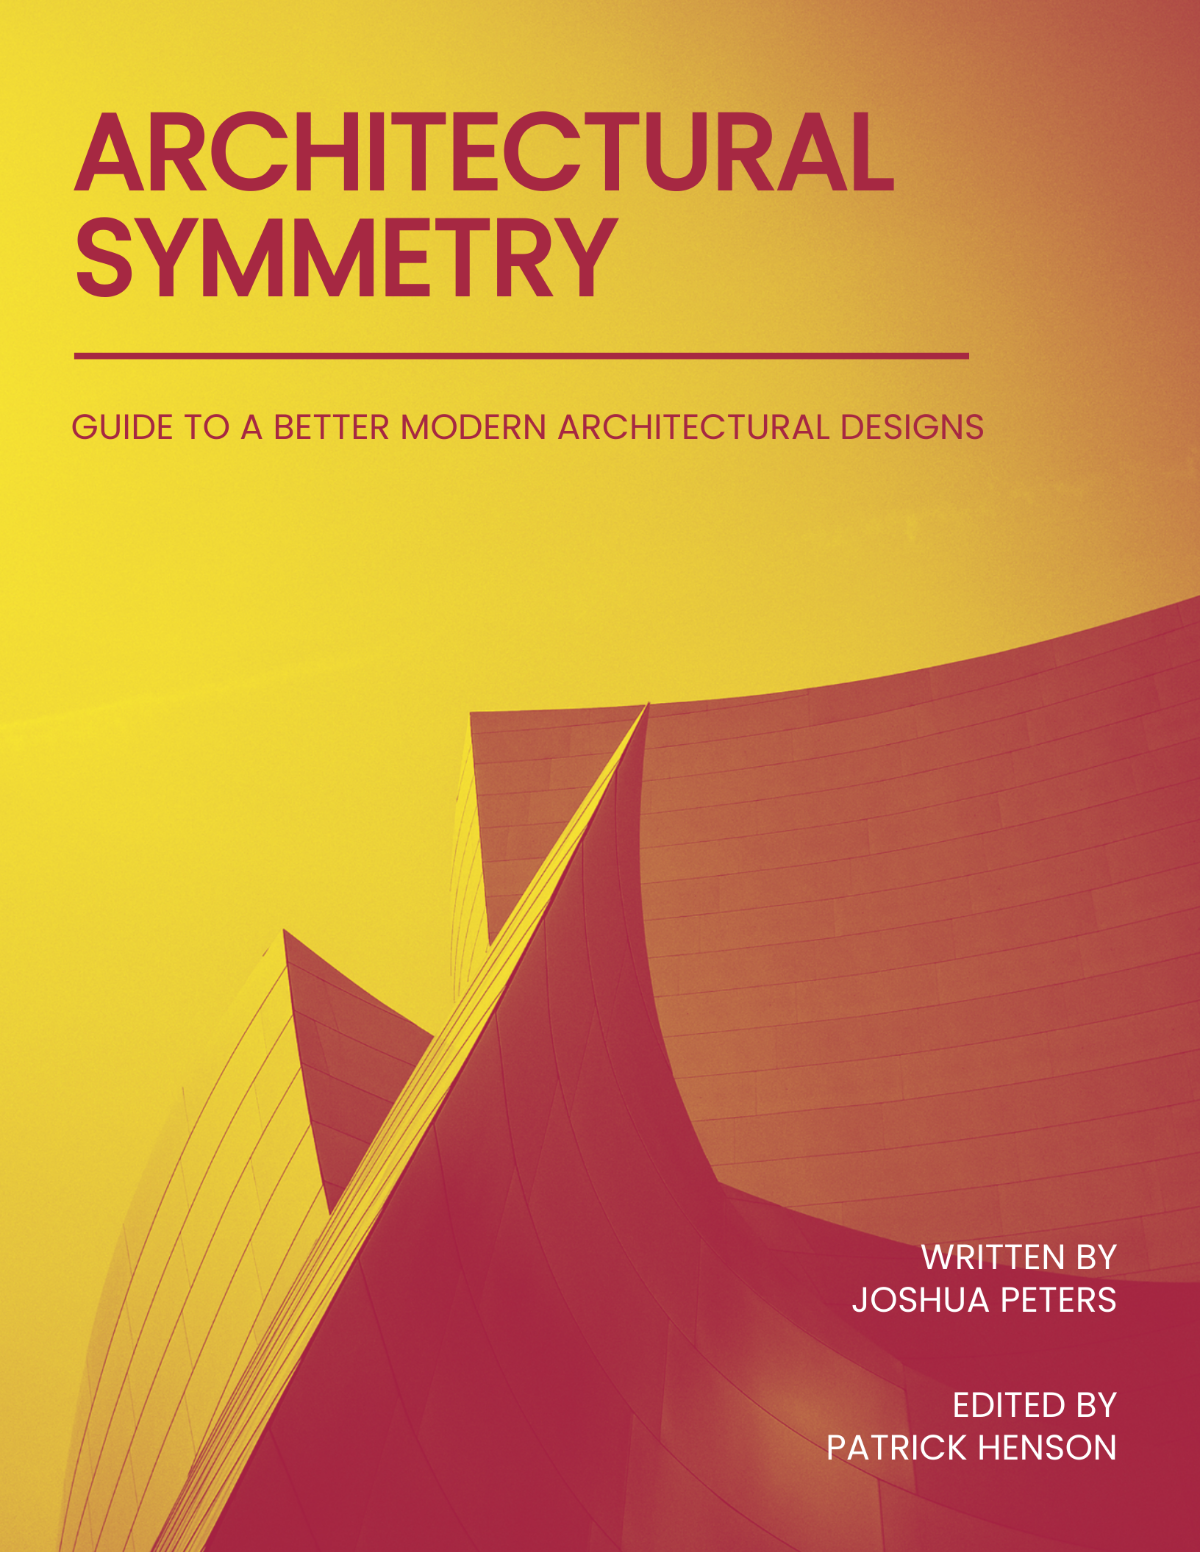 Architecture Book Cover Template